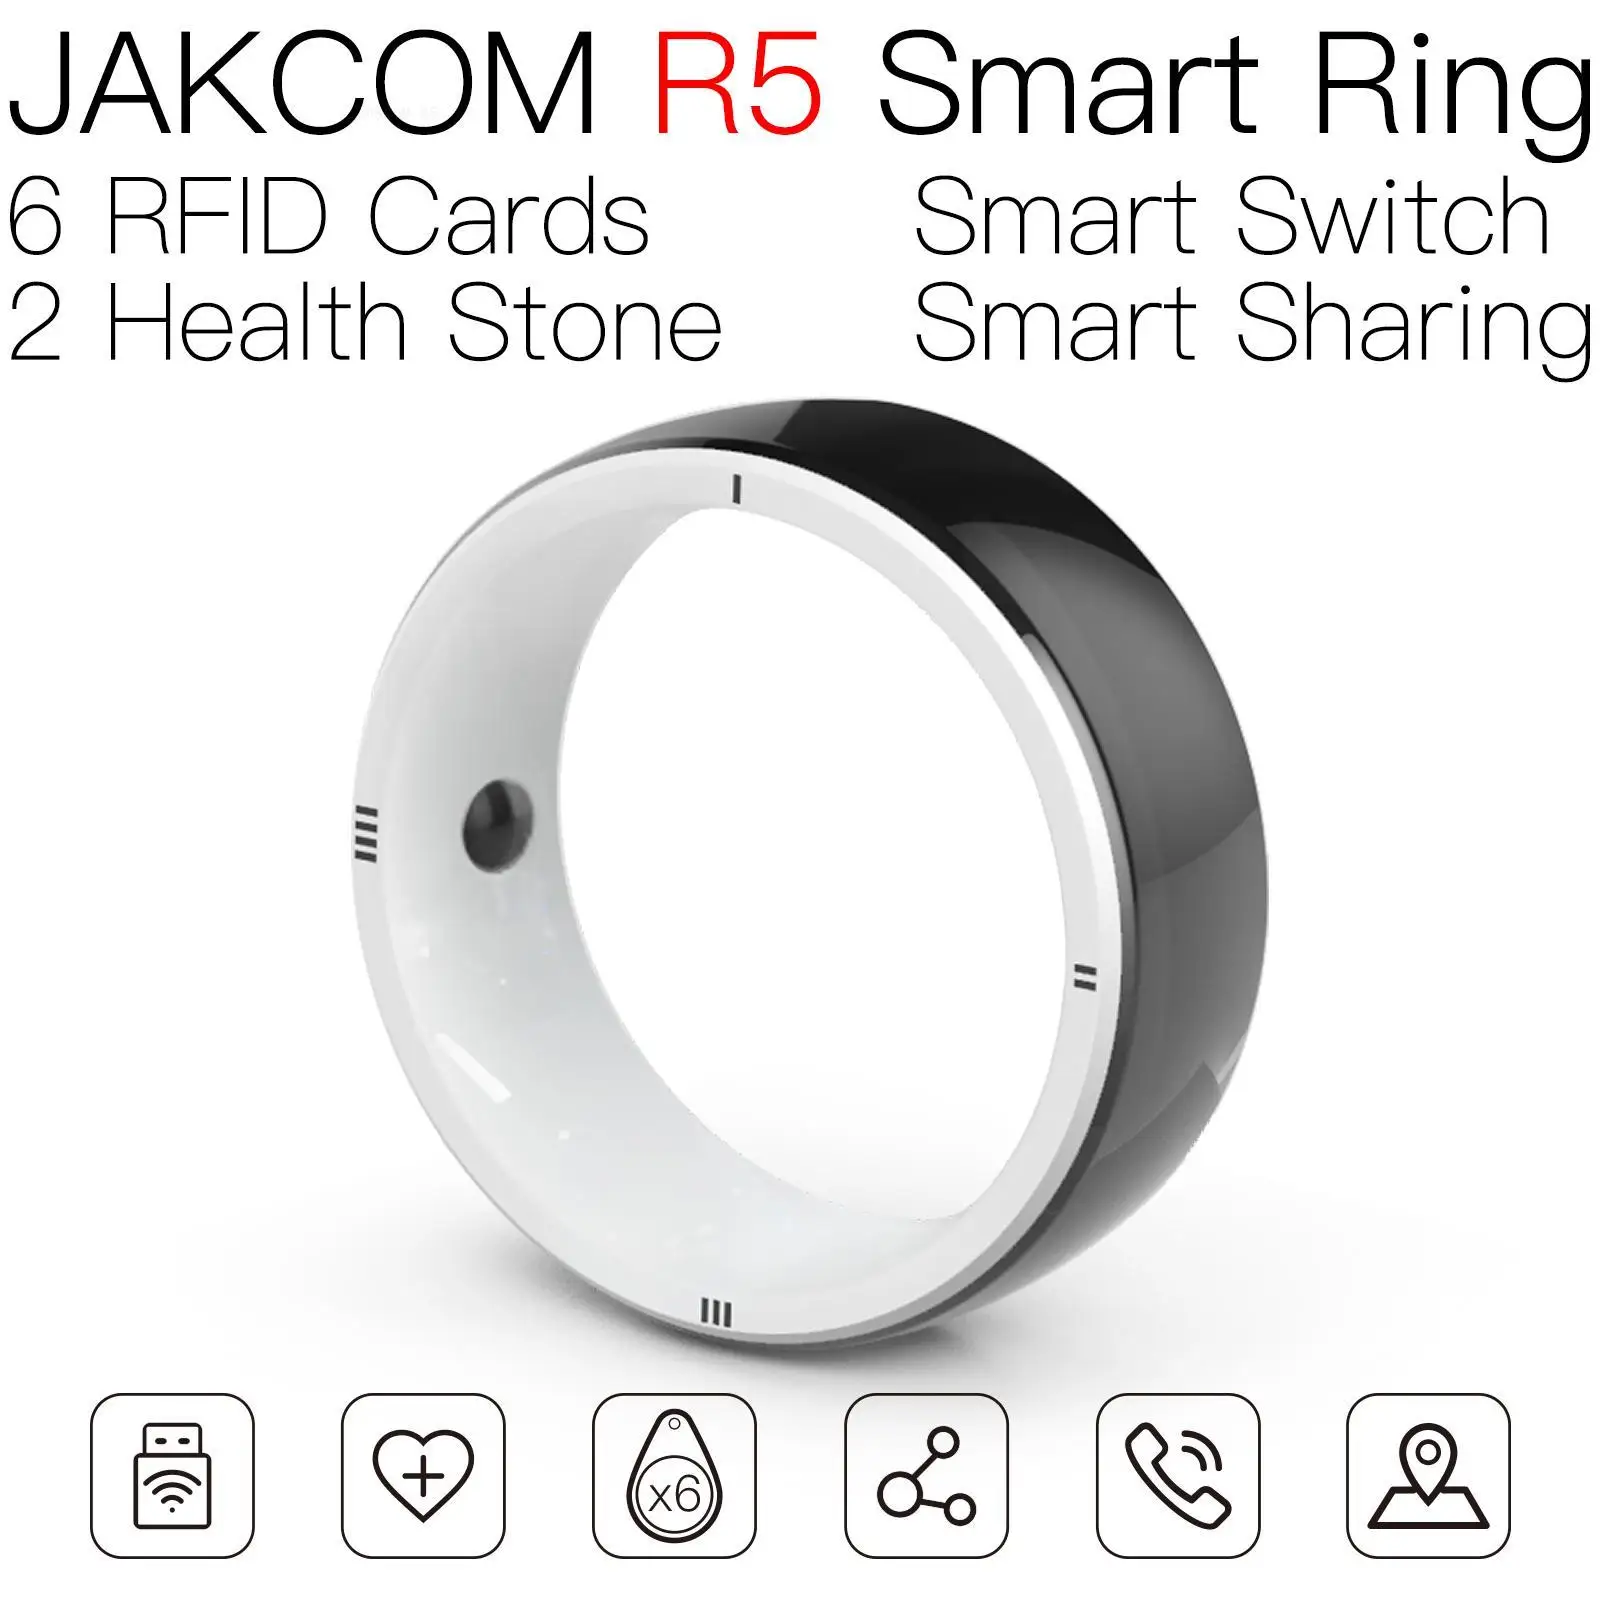 

Умное кольцо JAKCOM R5 лучше, чем rfid голубей 134 кГц, Бирка uhf МГц 26 бит iso 6b o epc gen2 amibo, новое металлическое устройство в виде листьев, системные карт...